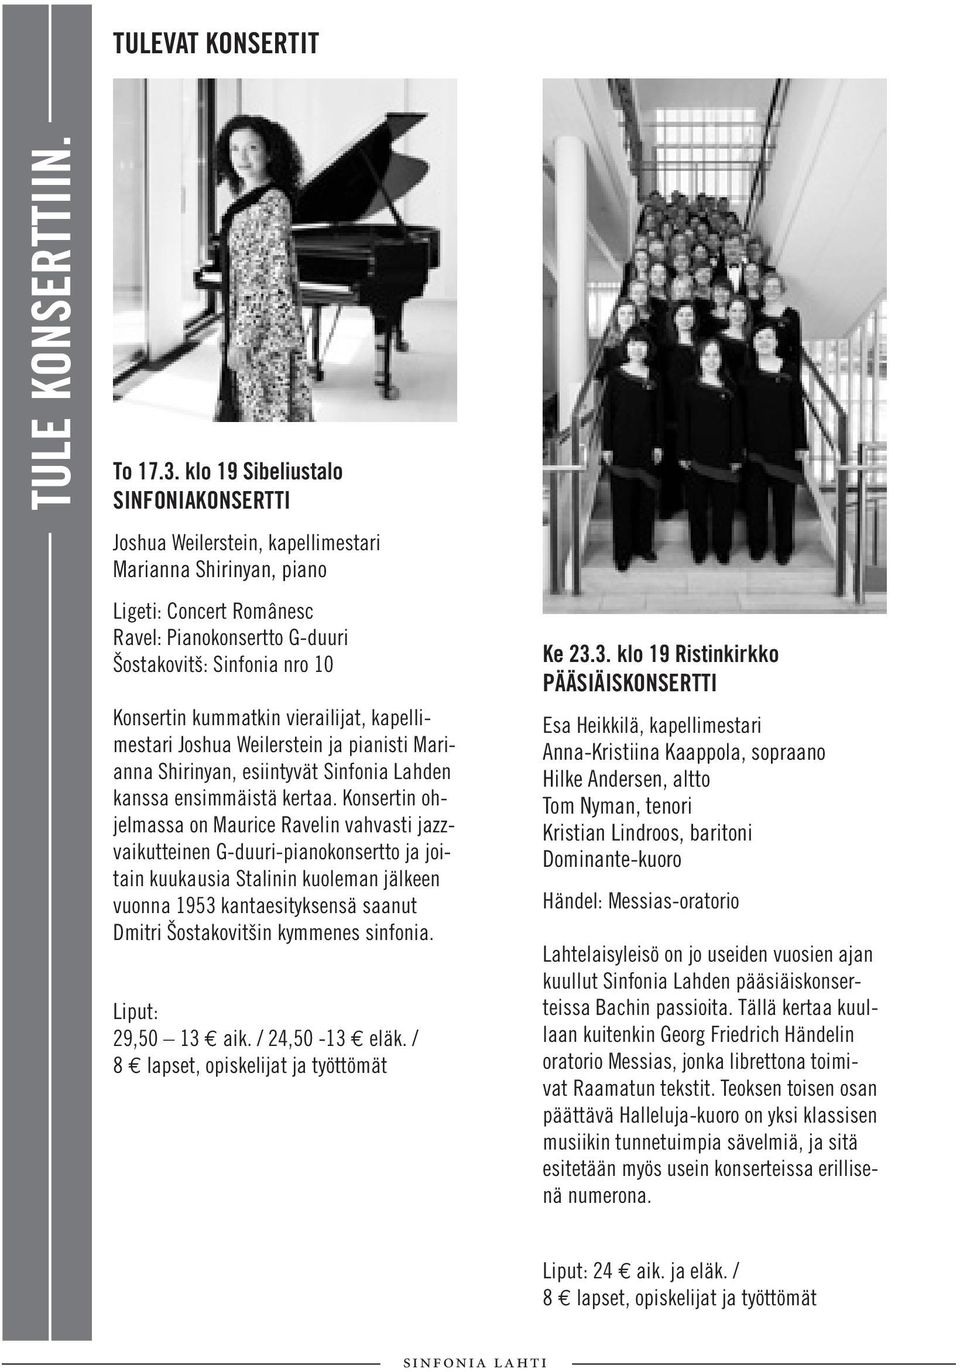 kummatkin vierailijat, kapellimestari Joshua Weilerstein ja pianisti Marianna Shirinyan, esiintyvät Sinfonia Lahden kanssa ensimmäistä kertaa.